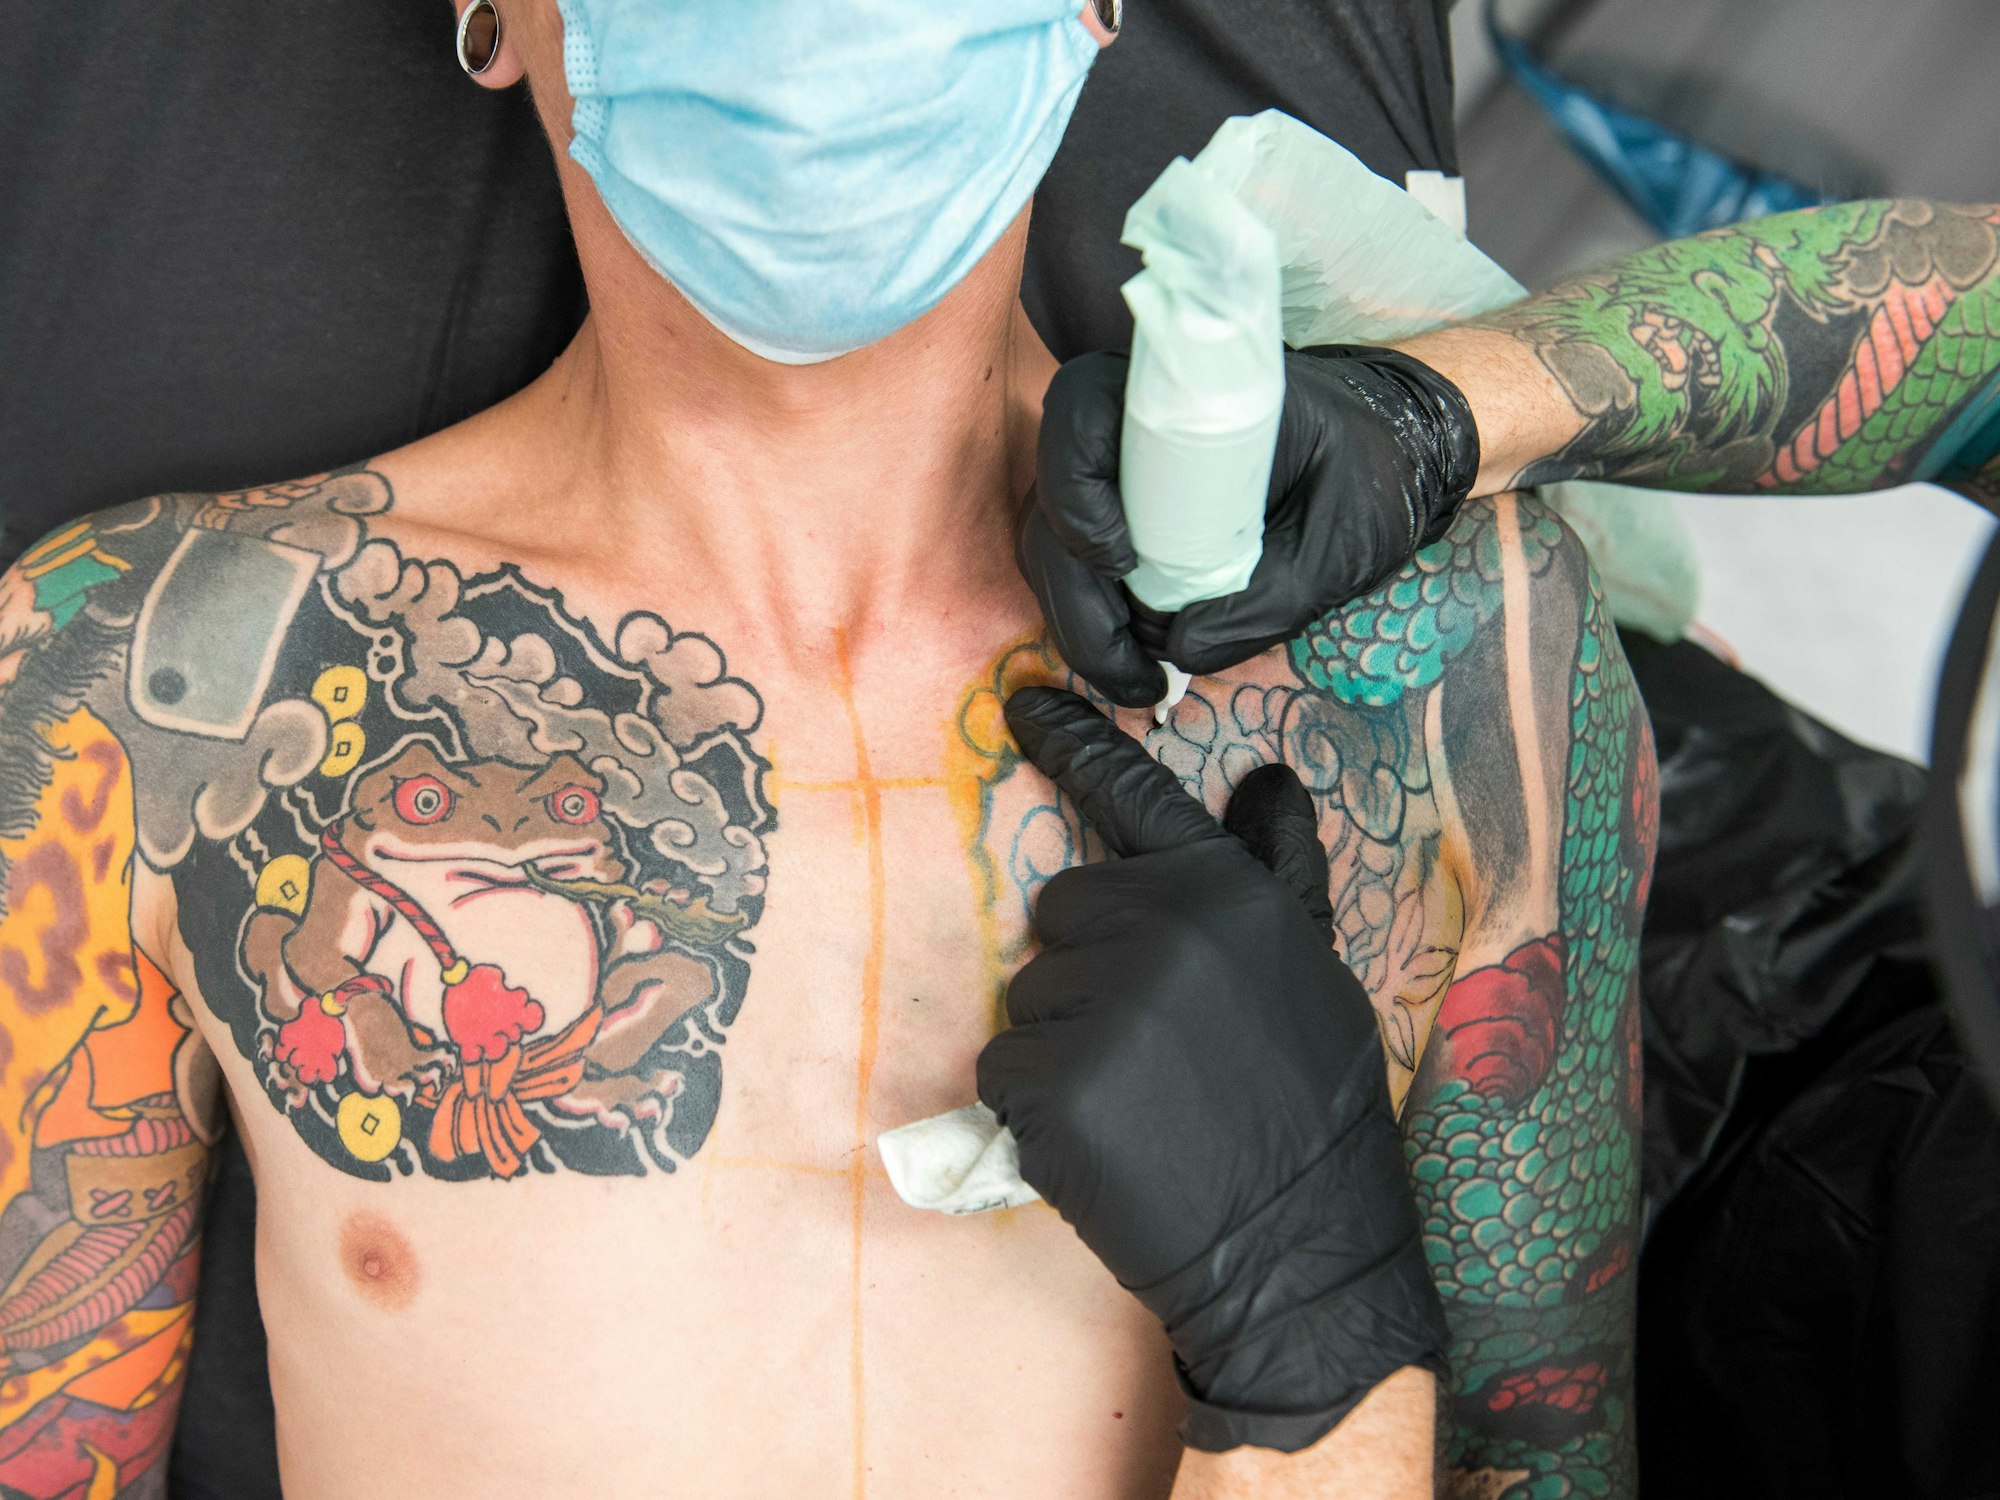 Ein Mann wird im Tattoostudio der Firma Edding tätowiert.